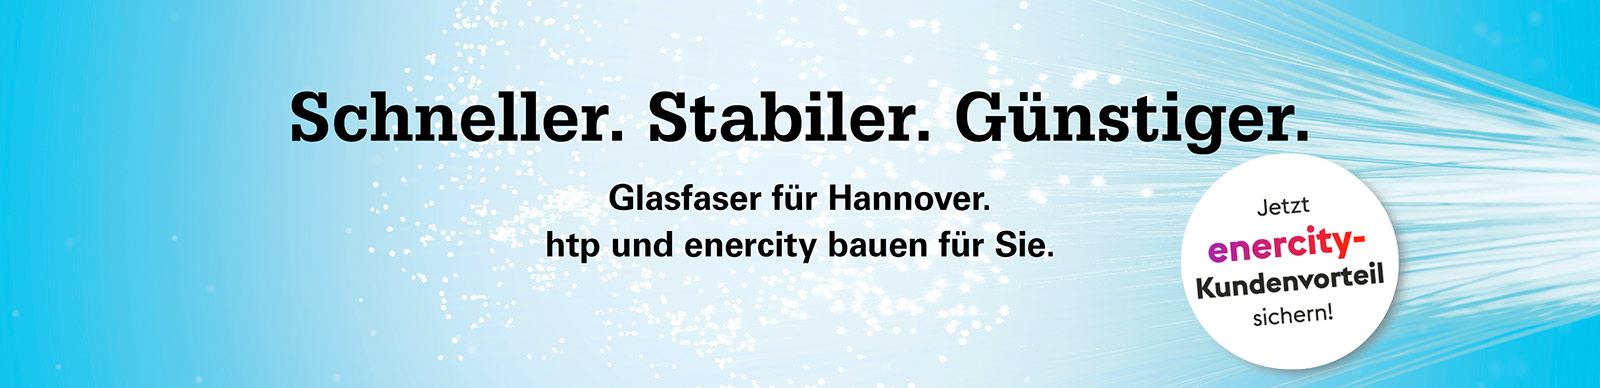 Schneller. Stabiler. Günstiger. Glasfaser für Hannover. htp und enercity bauen für Sie. Jetzt enercity-Kundenvorteil sichern